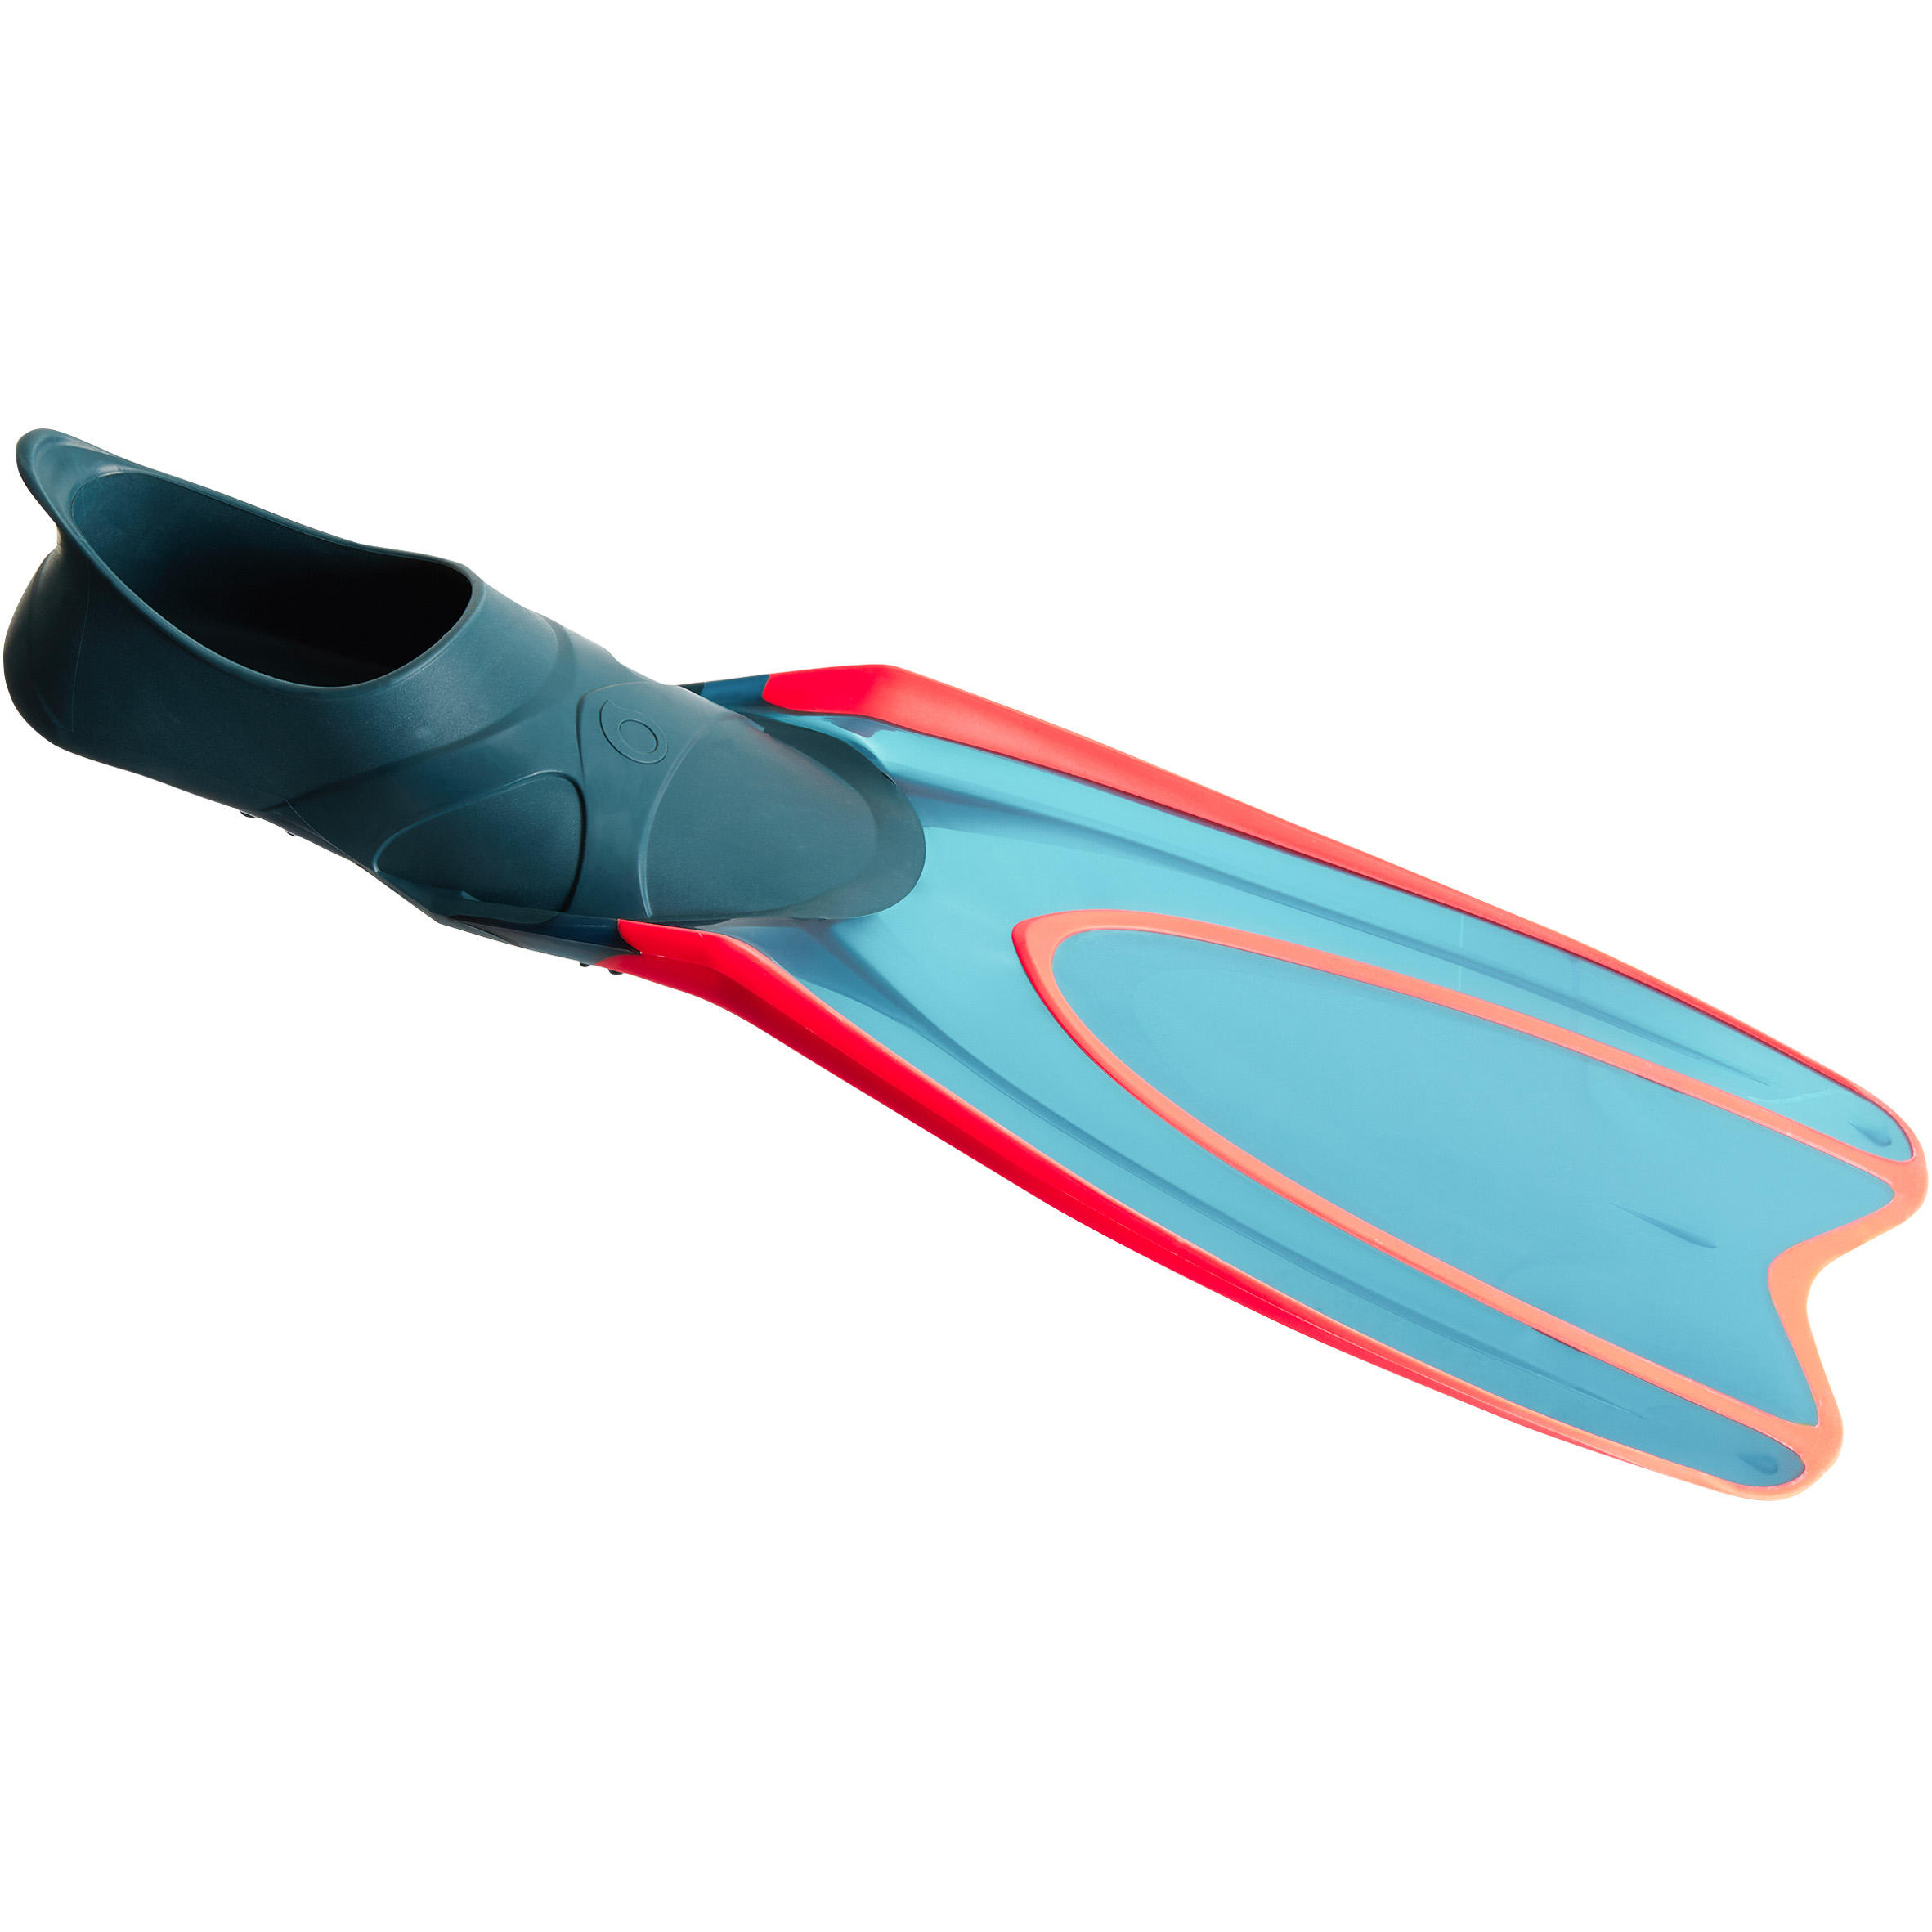 [ส่งฟรี ] ตีนกบผู้ใหญ่สำหรับการดำน้ำด้วยท่อหายใจรุ่น SNK 900 (สีเทา Neon) Adult Snorkelling Fins SNK 900 neon grey ของแท้ ตีนกบว่ายน้ำ ตีนกบดำน้ำ ตีนกบดำน้ำลึก มีรับประกัน คุณภาพดี โปรโมชั่นสุดคุ้ม โค้งสุดท้าย